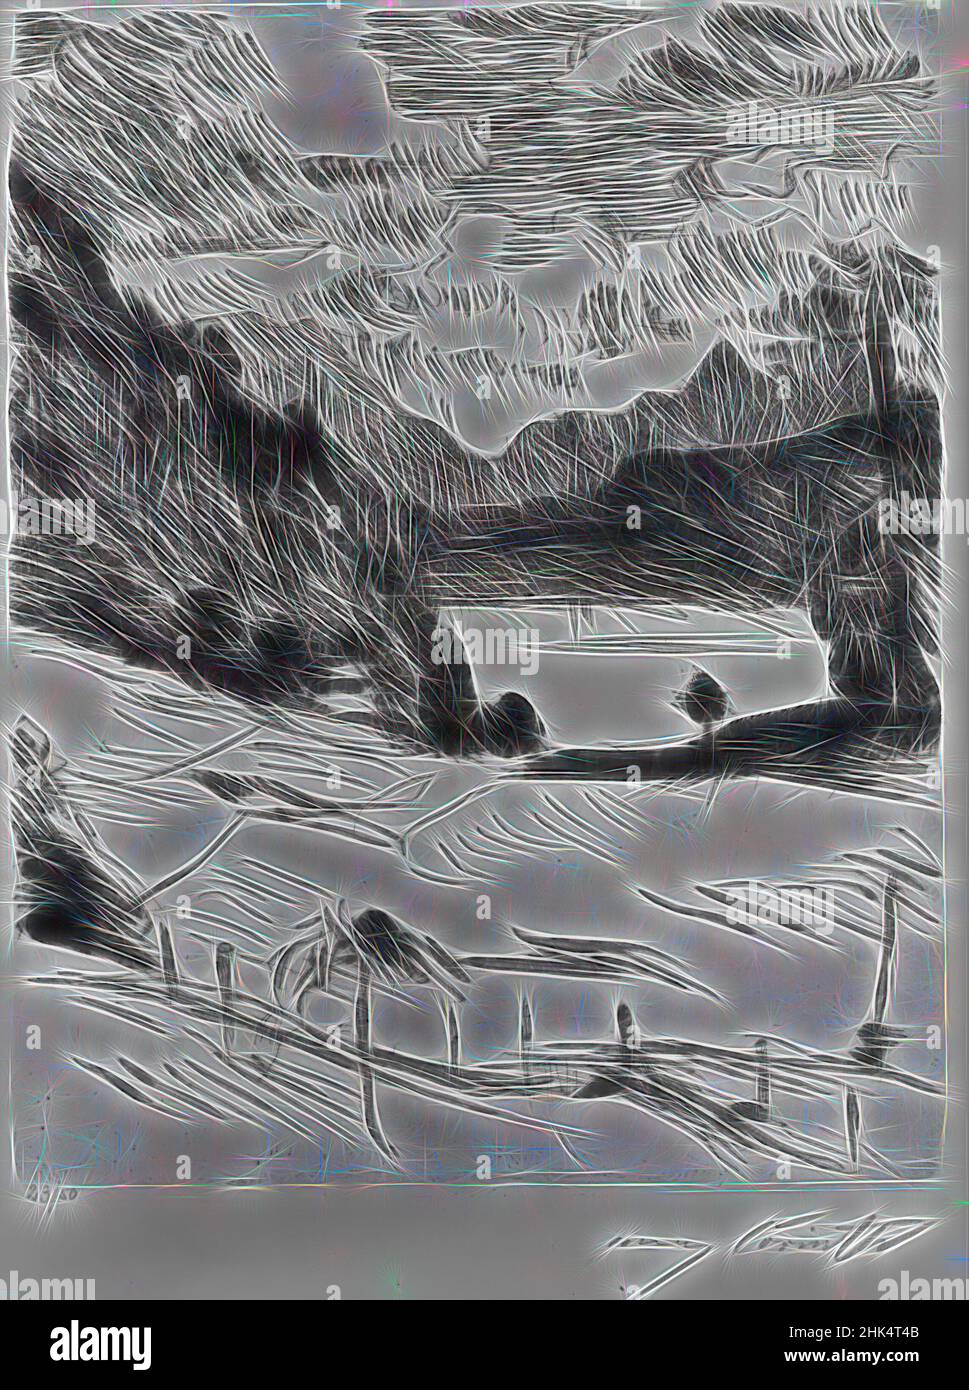 Inspiriert vom Walchensee, der Walchensee, am Walchensee, Tafel 2, Lovis Corinth, Deutsch, 1858-1925, Ätzung und Trockenpunkt auf Wove-Papier, Deutschland, 1920, Bild, Platte: 9 3/4 x 7 5/8 Zoll, 24,8 x 19,4 cm, neu erfunden von Artotop. Klassische Kunst neu erfunden mit einem modernen Twist. Design von warmen fröhlichen Leuchten der Helligkeit und Lichtstrahl Strahlkraft. Fotografie inspiriert von Surrealismus und Futurismus, umarmt dynamische Energie der modernen Technologie, Bewegung, Geschwindigkeit und Kultur zu revolutionieren Stockfoto